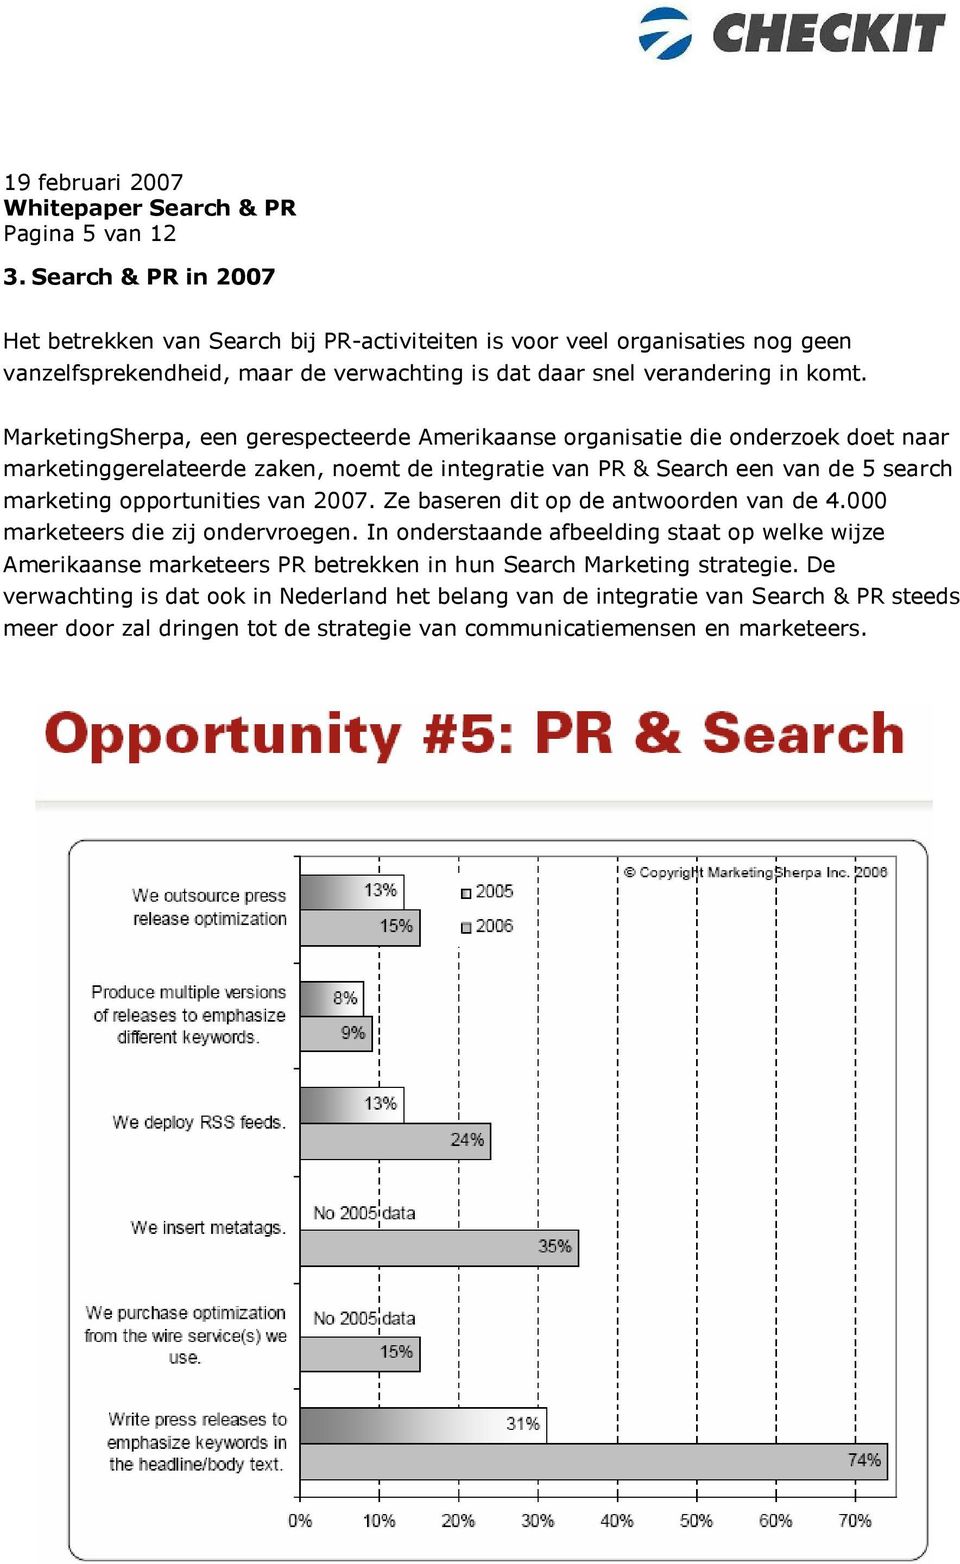 MarketingSherpa, een gerespecteerde Amerikaanse organisatie die onderzoek doet naar marketinggerelateerde zaken, noemt de integratie van PR & Search een van de 5 search marketing